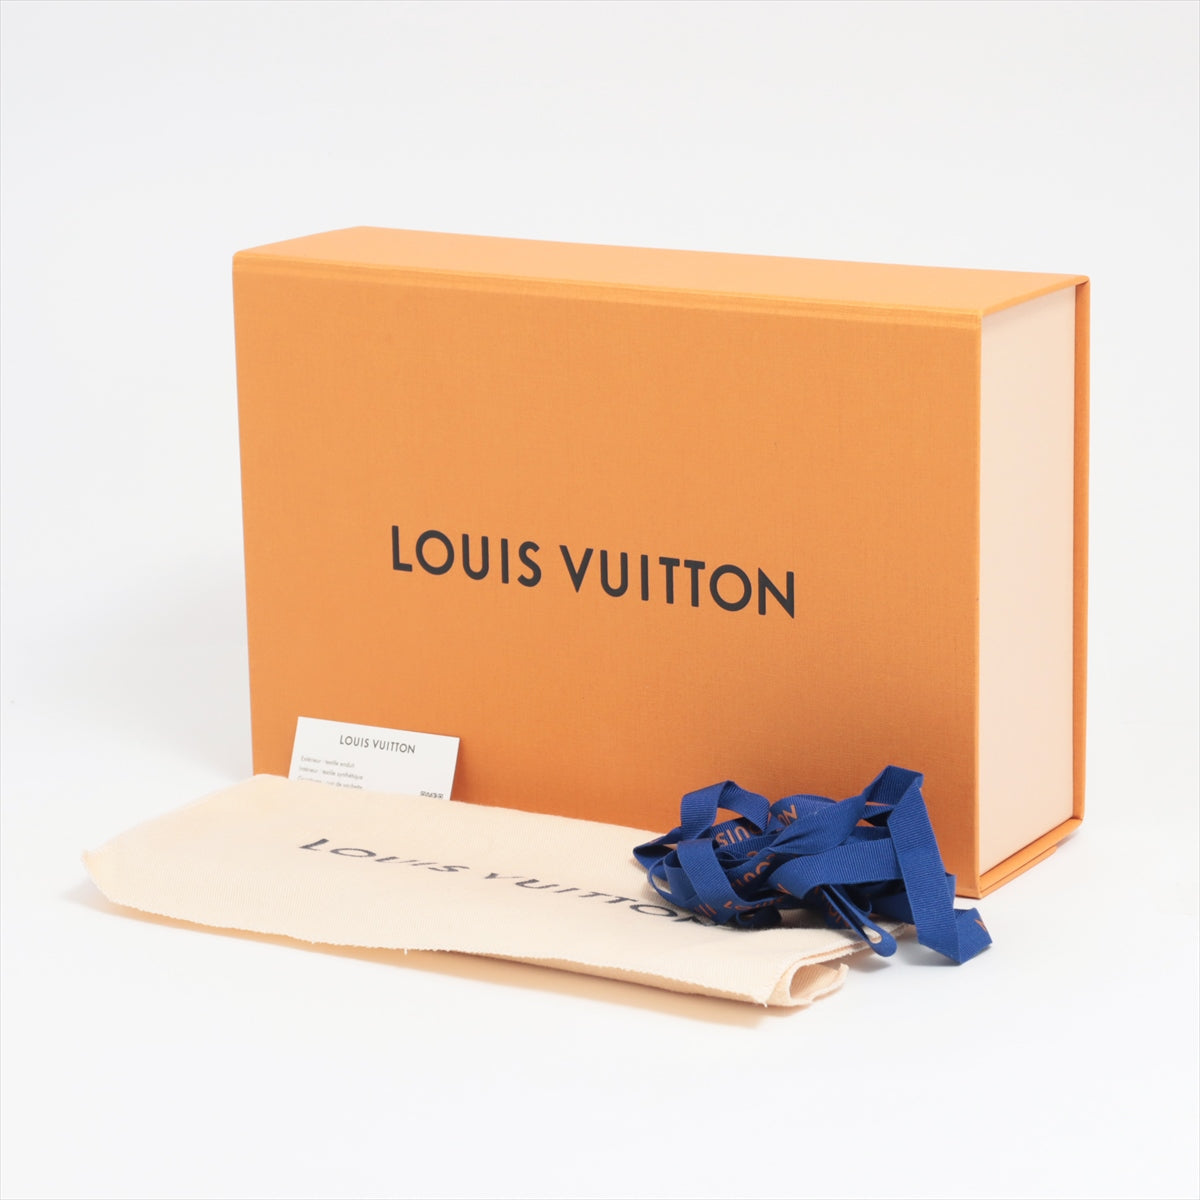 Louis Vuitton Monogram Pochette 化妝品 M47515 棕色 Pochette